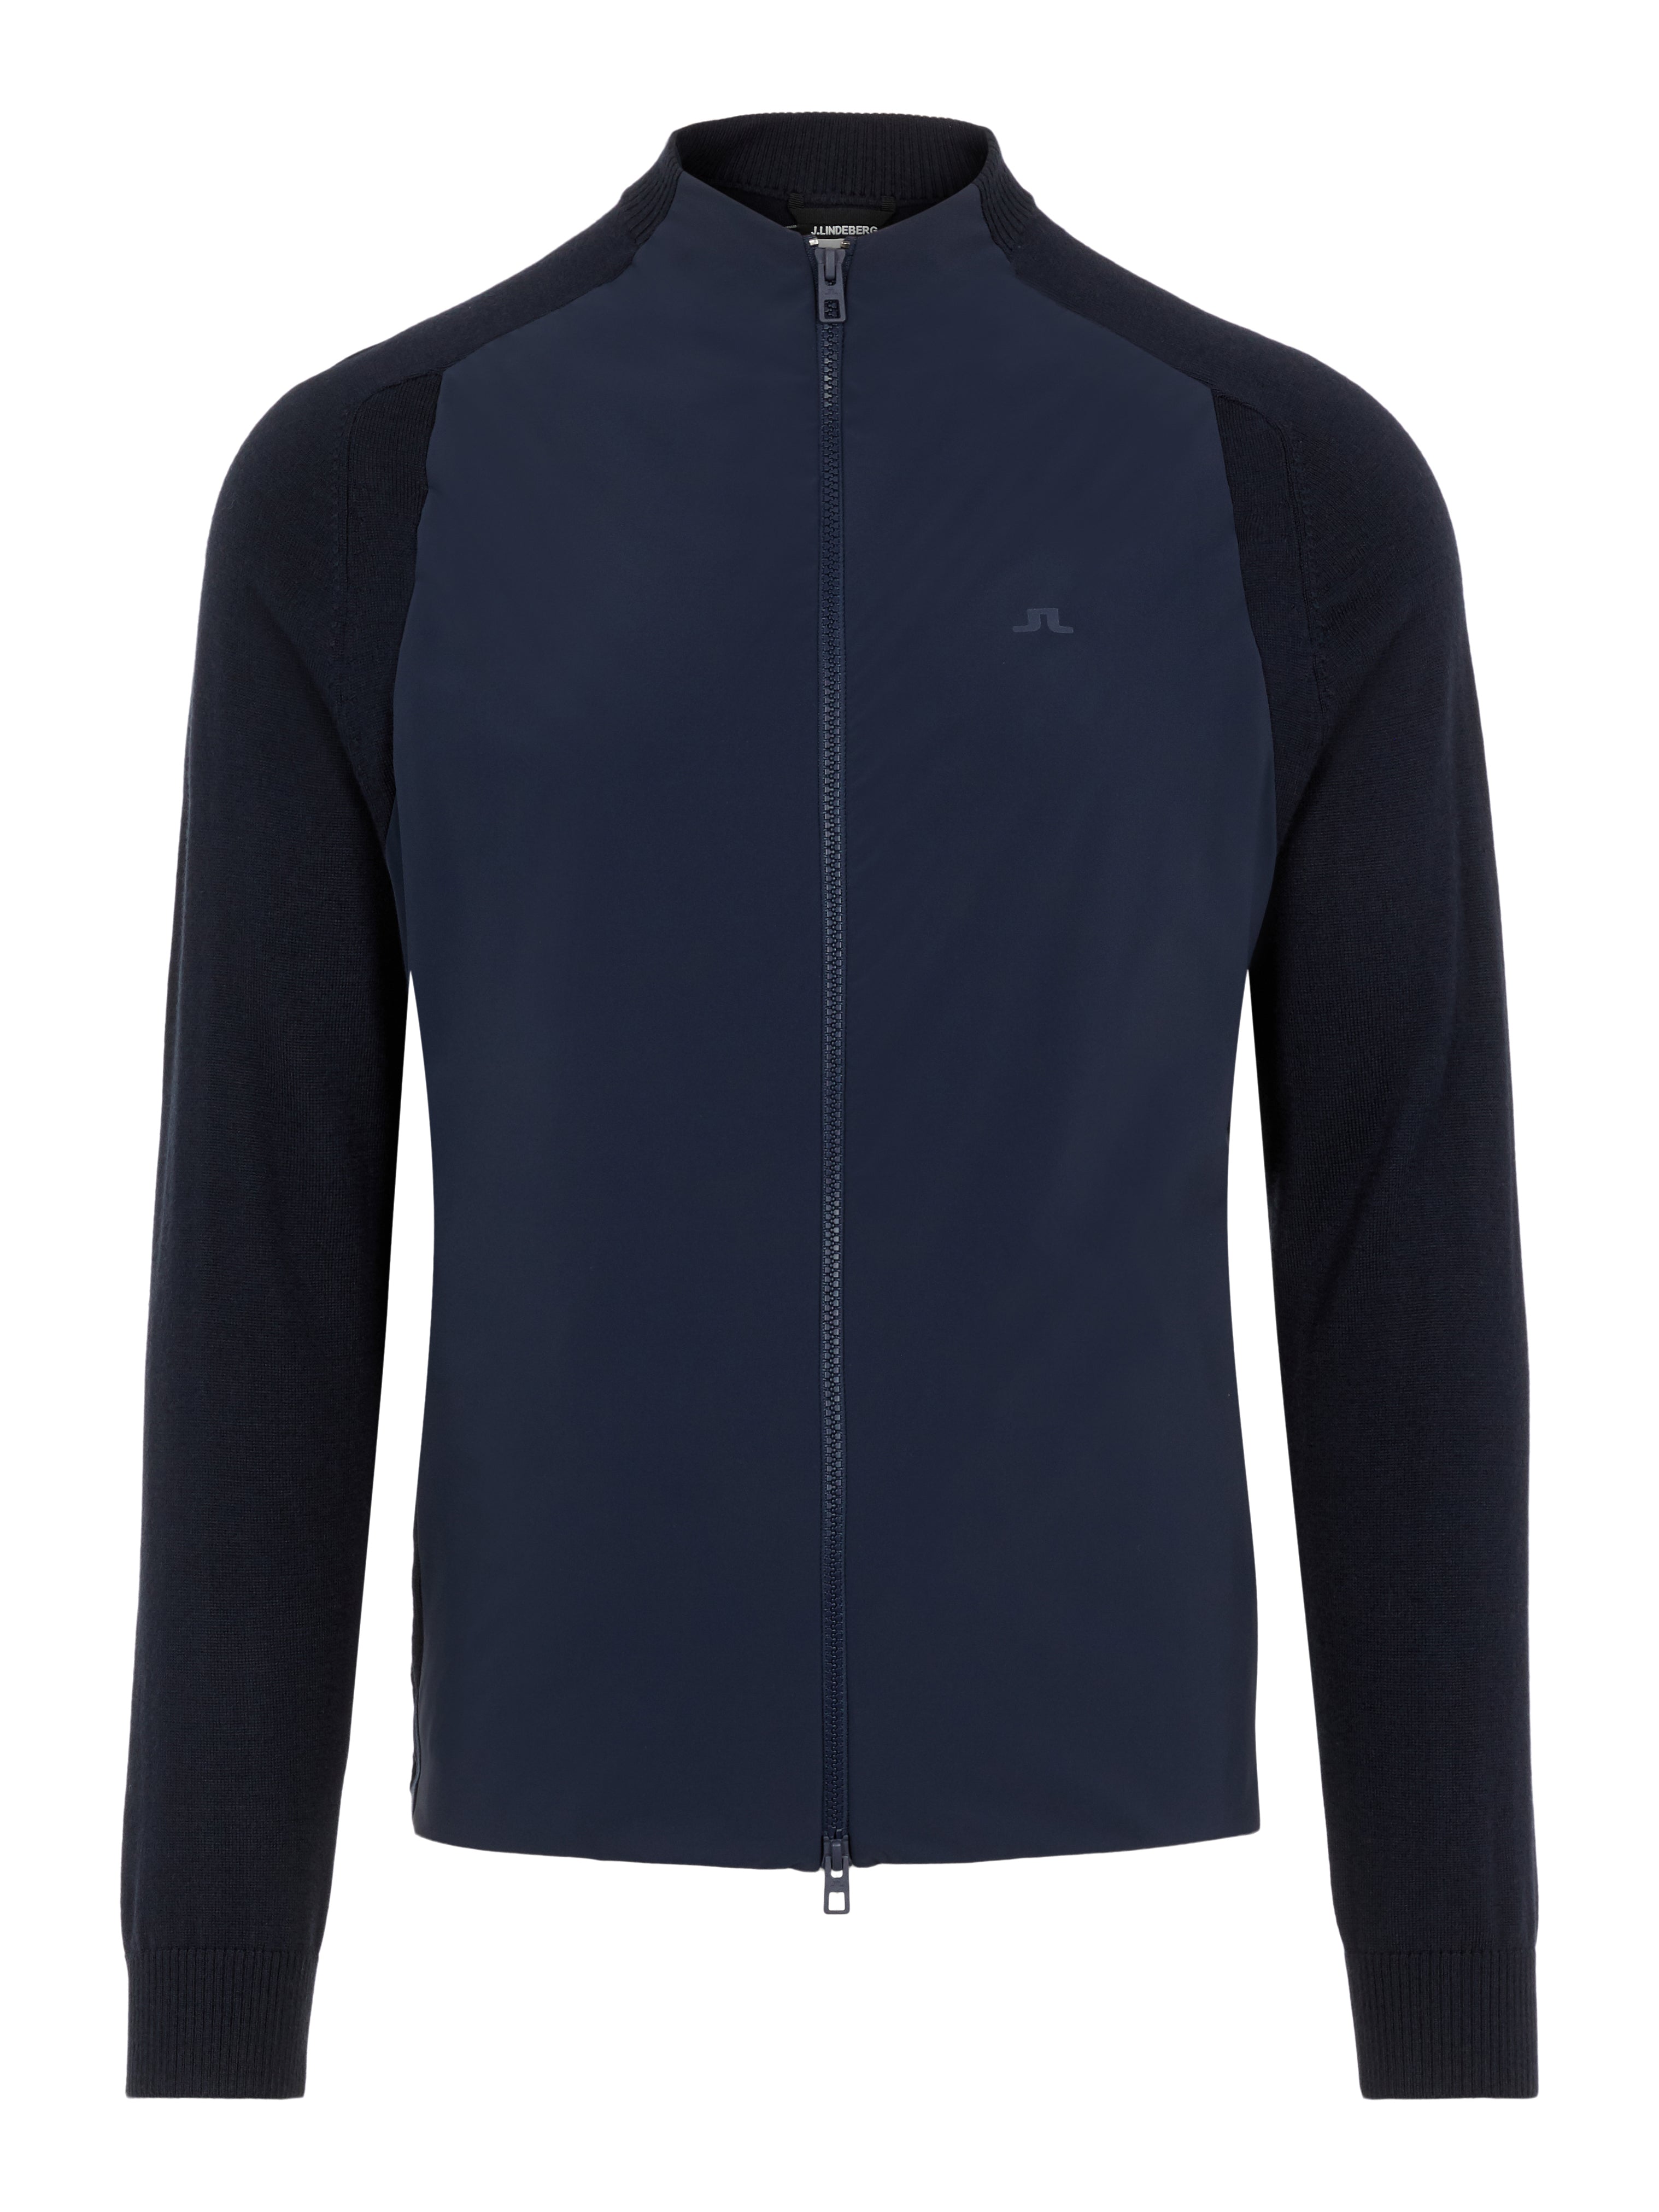 'Knit Hybrid' Collarless Golf Jacket - MEN / AW20